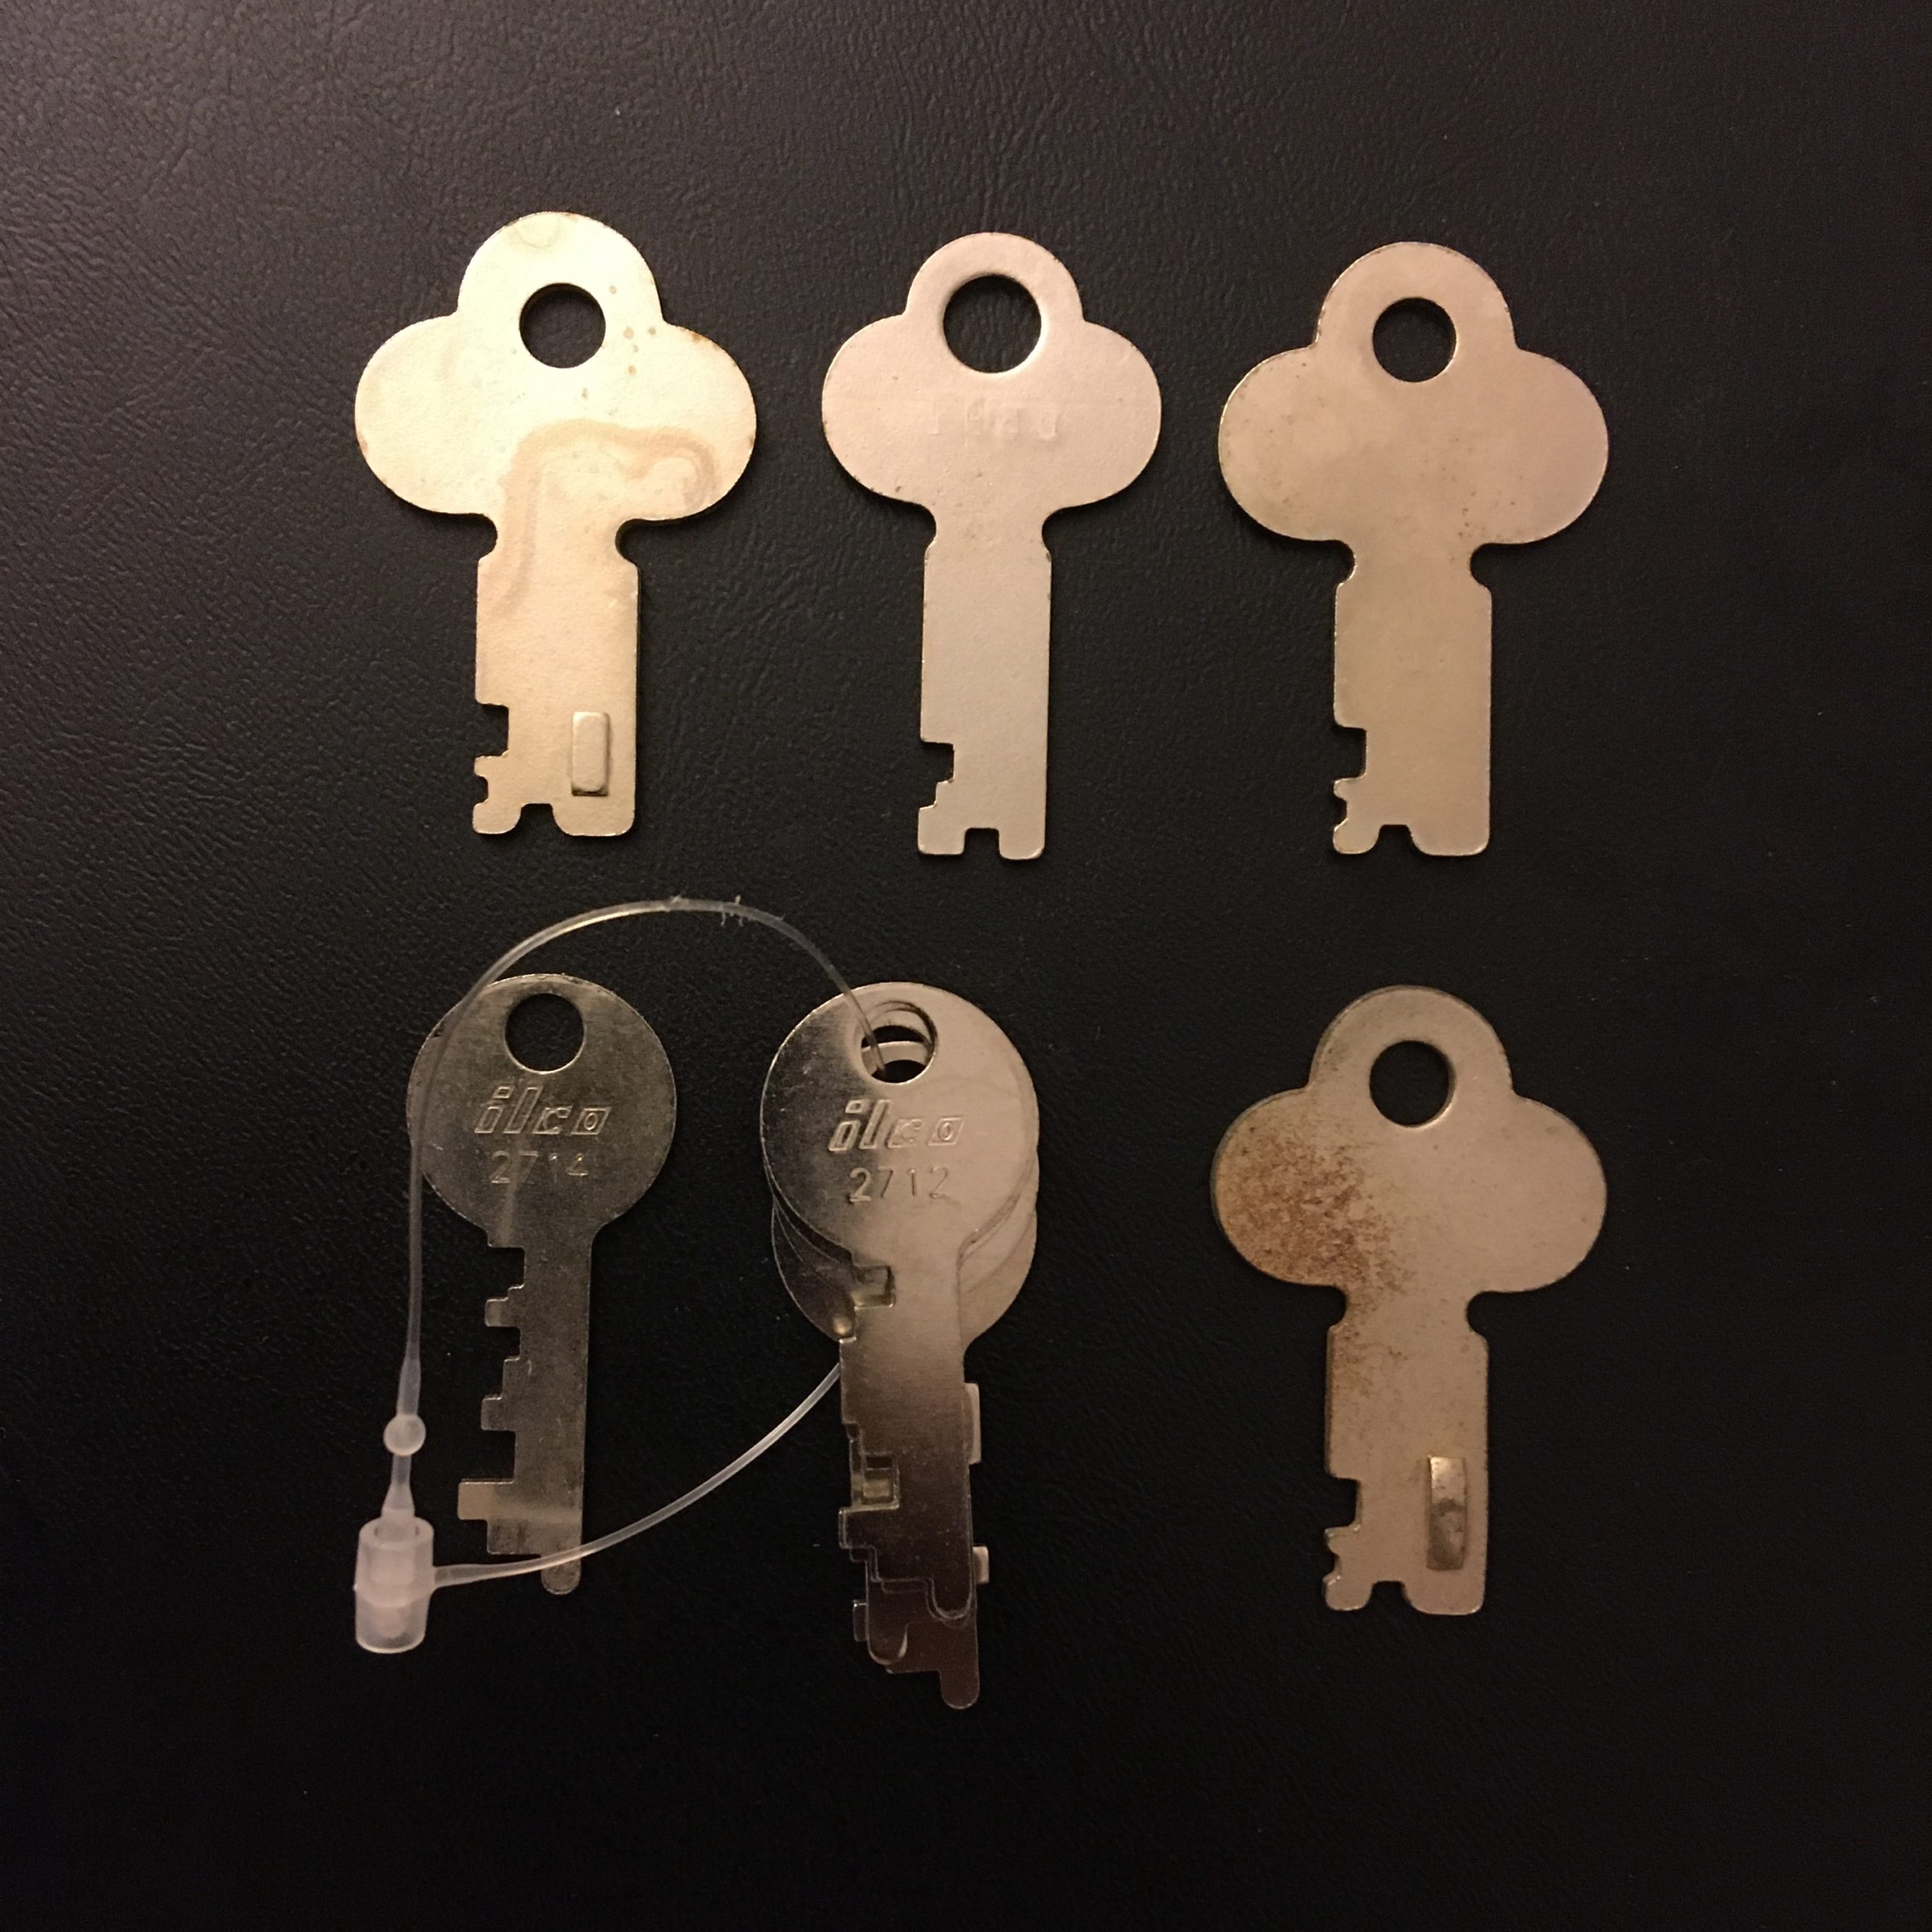 We now carry a wide range of flat steel keys